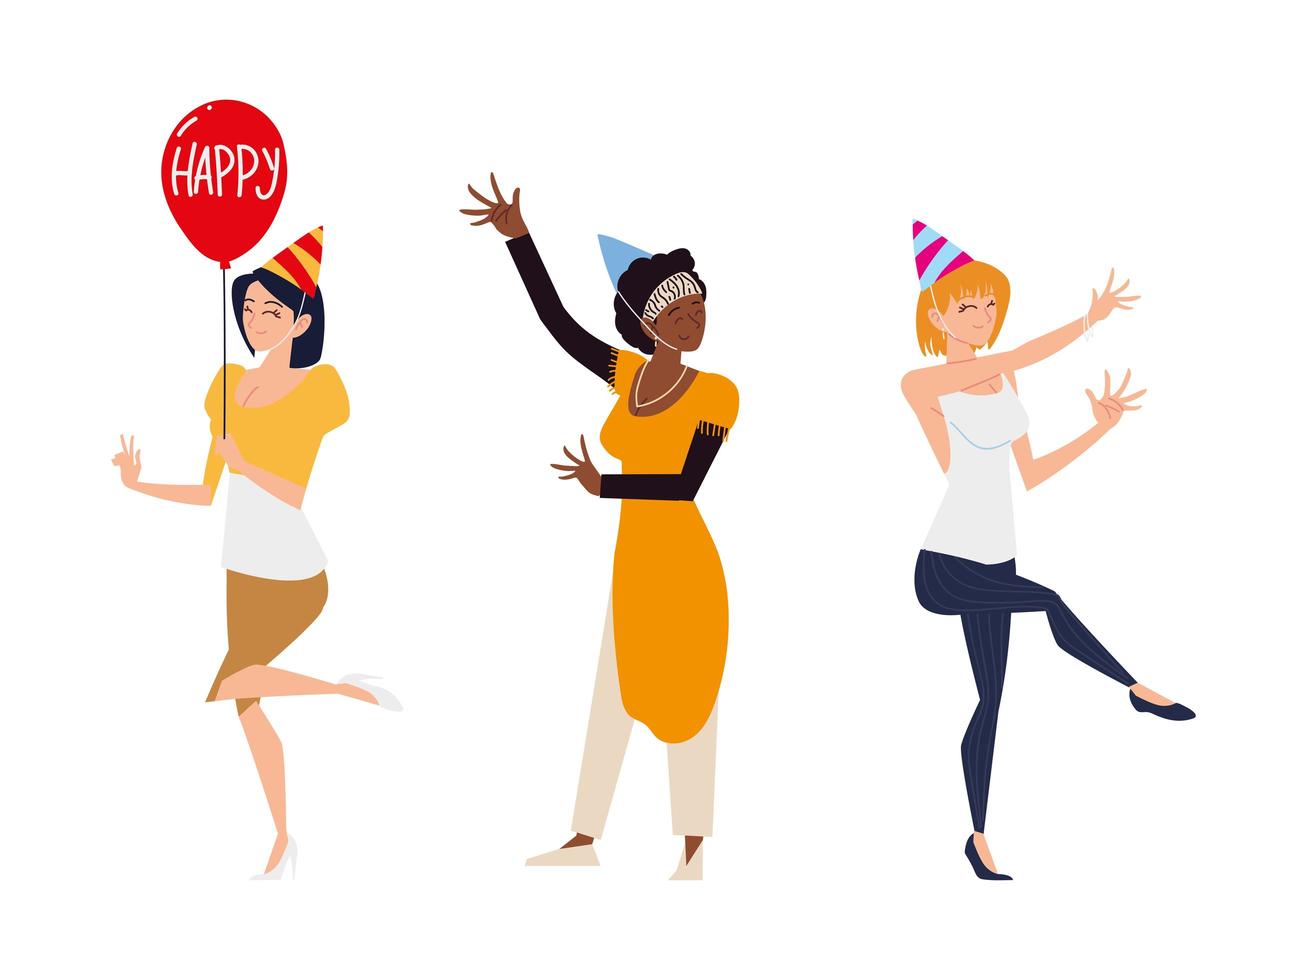 Gruppenfrauen mit Partyhüten Ballon feiern und tanzen vektor